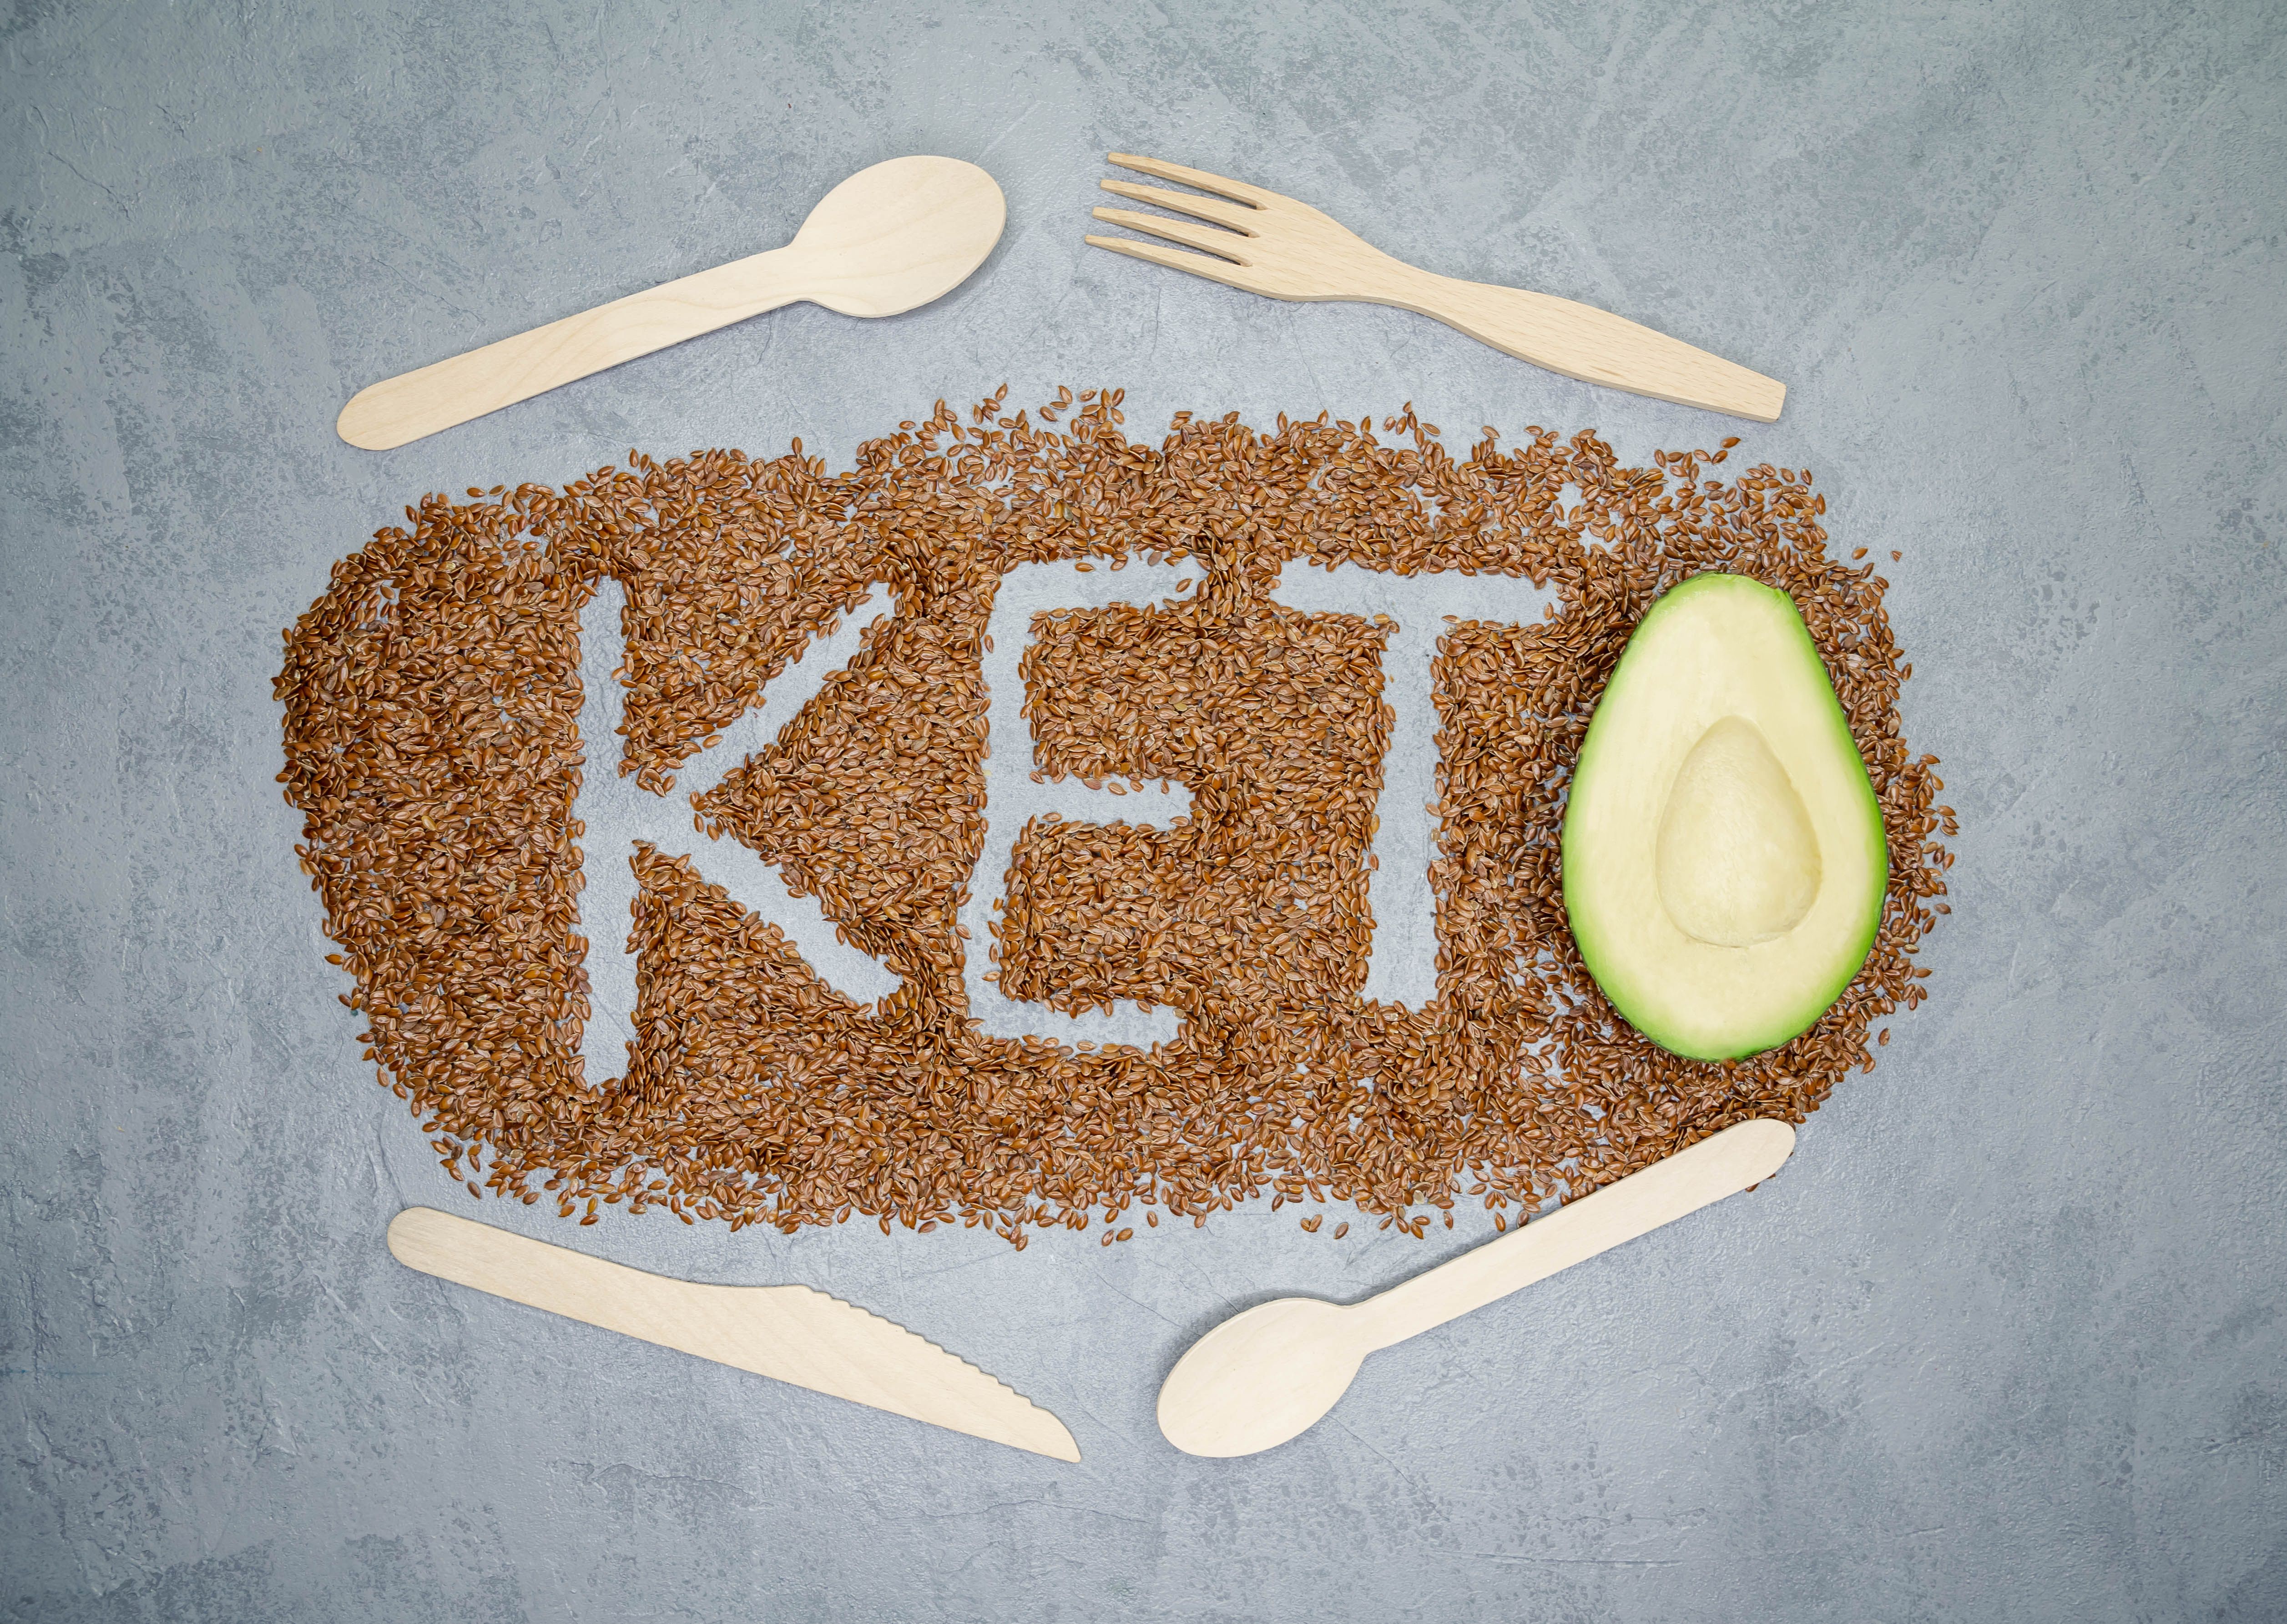 Los peligros de las dietas keto: aumentan el riesgo de infarto, cáncer, diabetes o Alzheimer